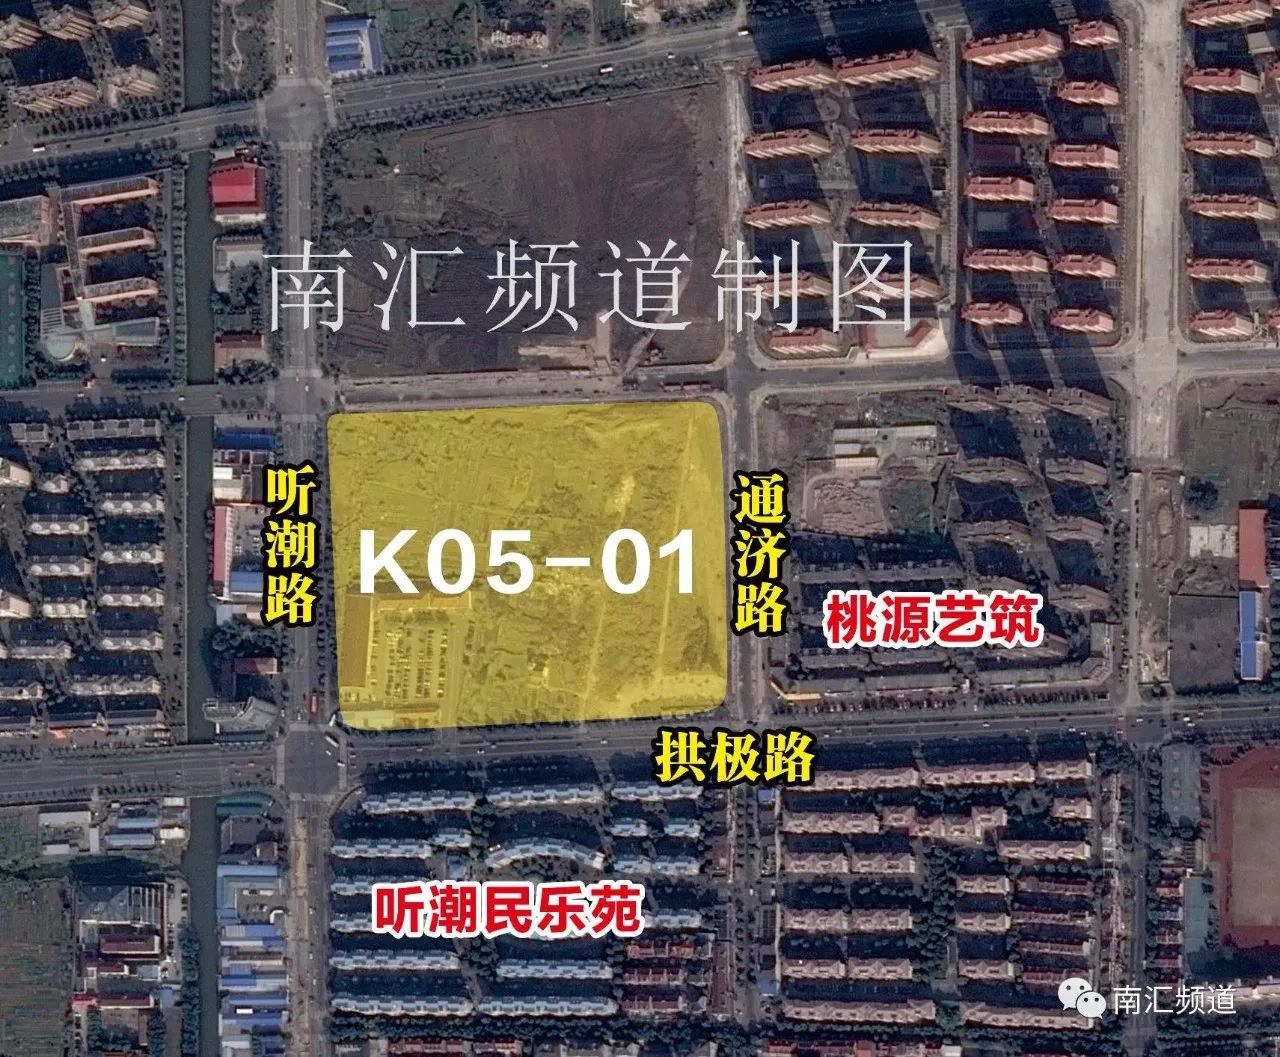 惠南镇地块位于规划的民乐大居区域内,编号为k05-01,拱极路和听潮路